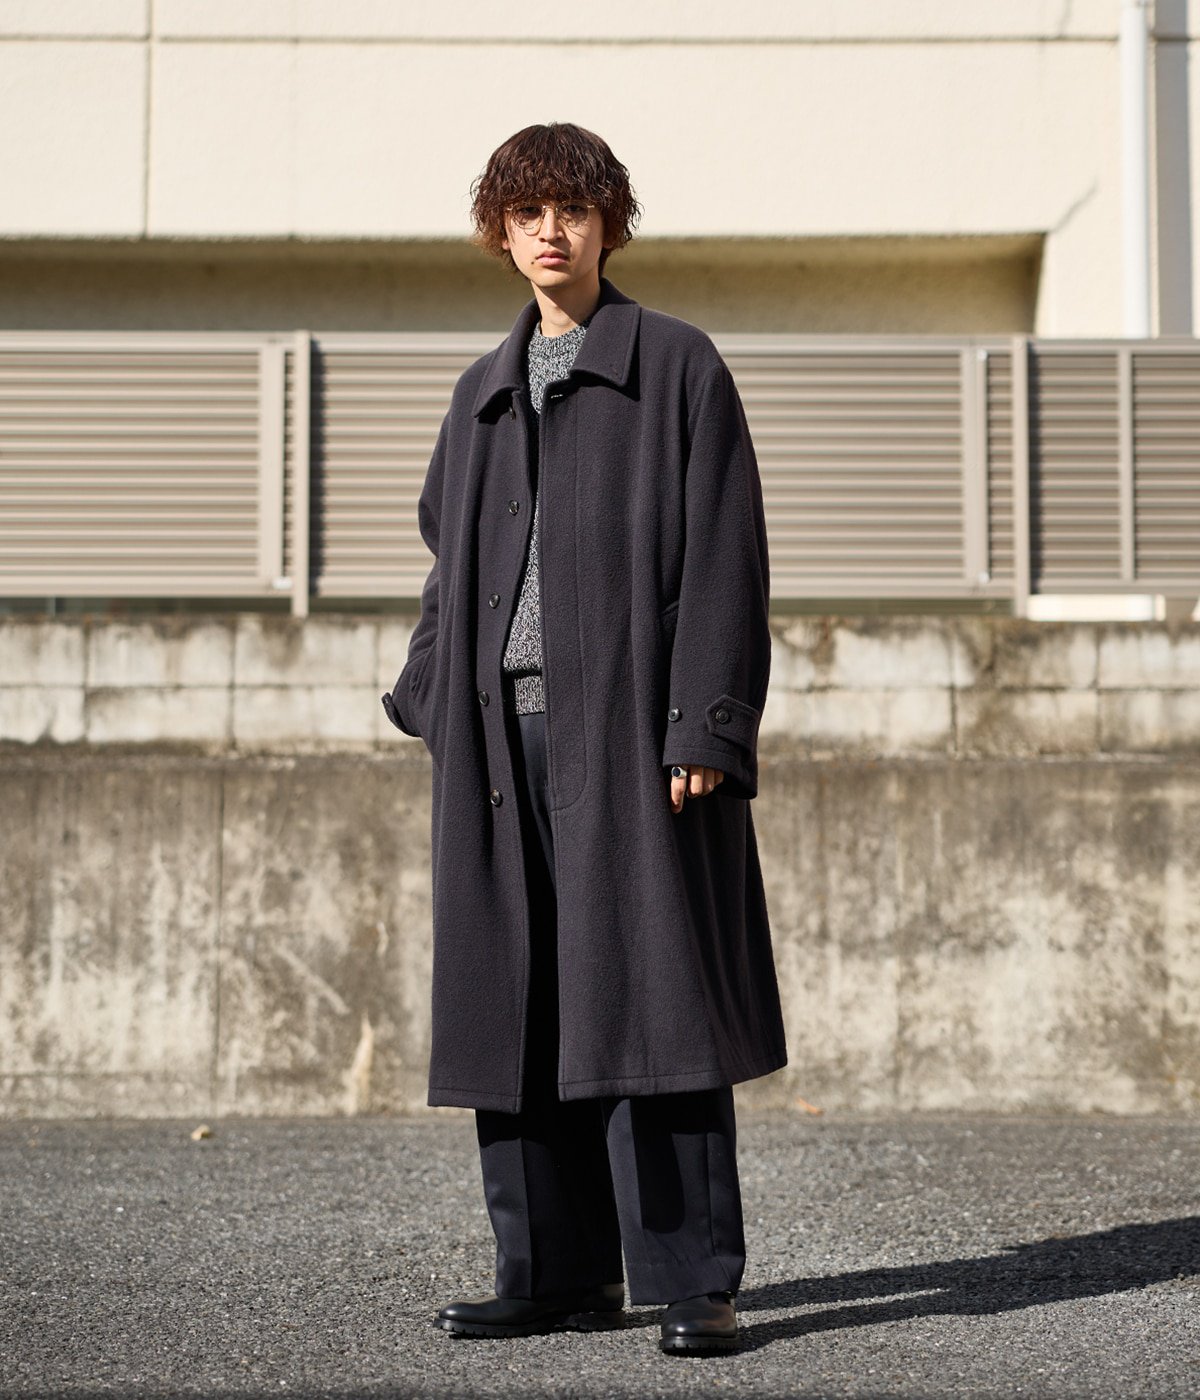 URU / ウル  Balmacaan coat (typeA)